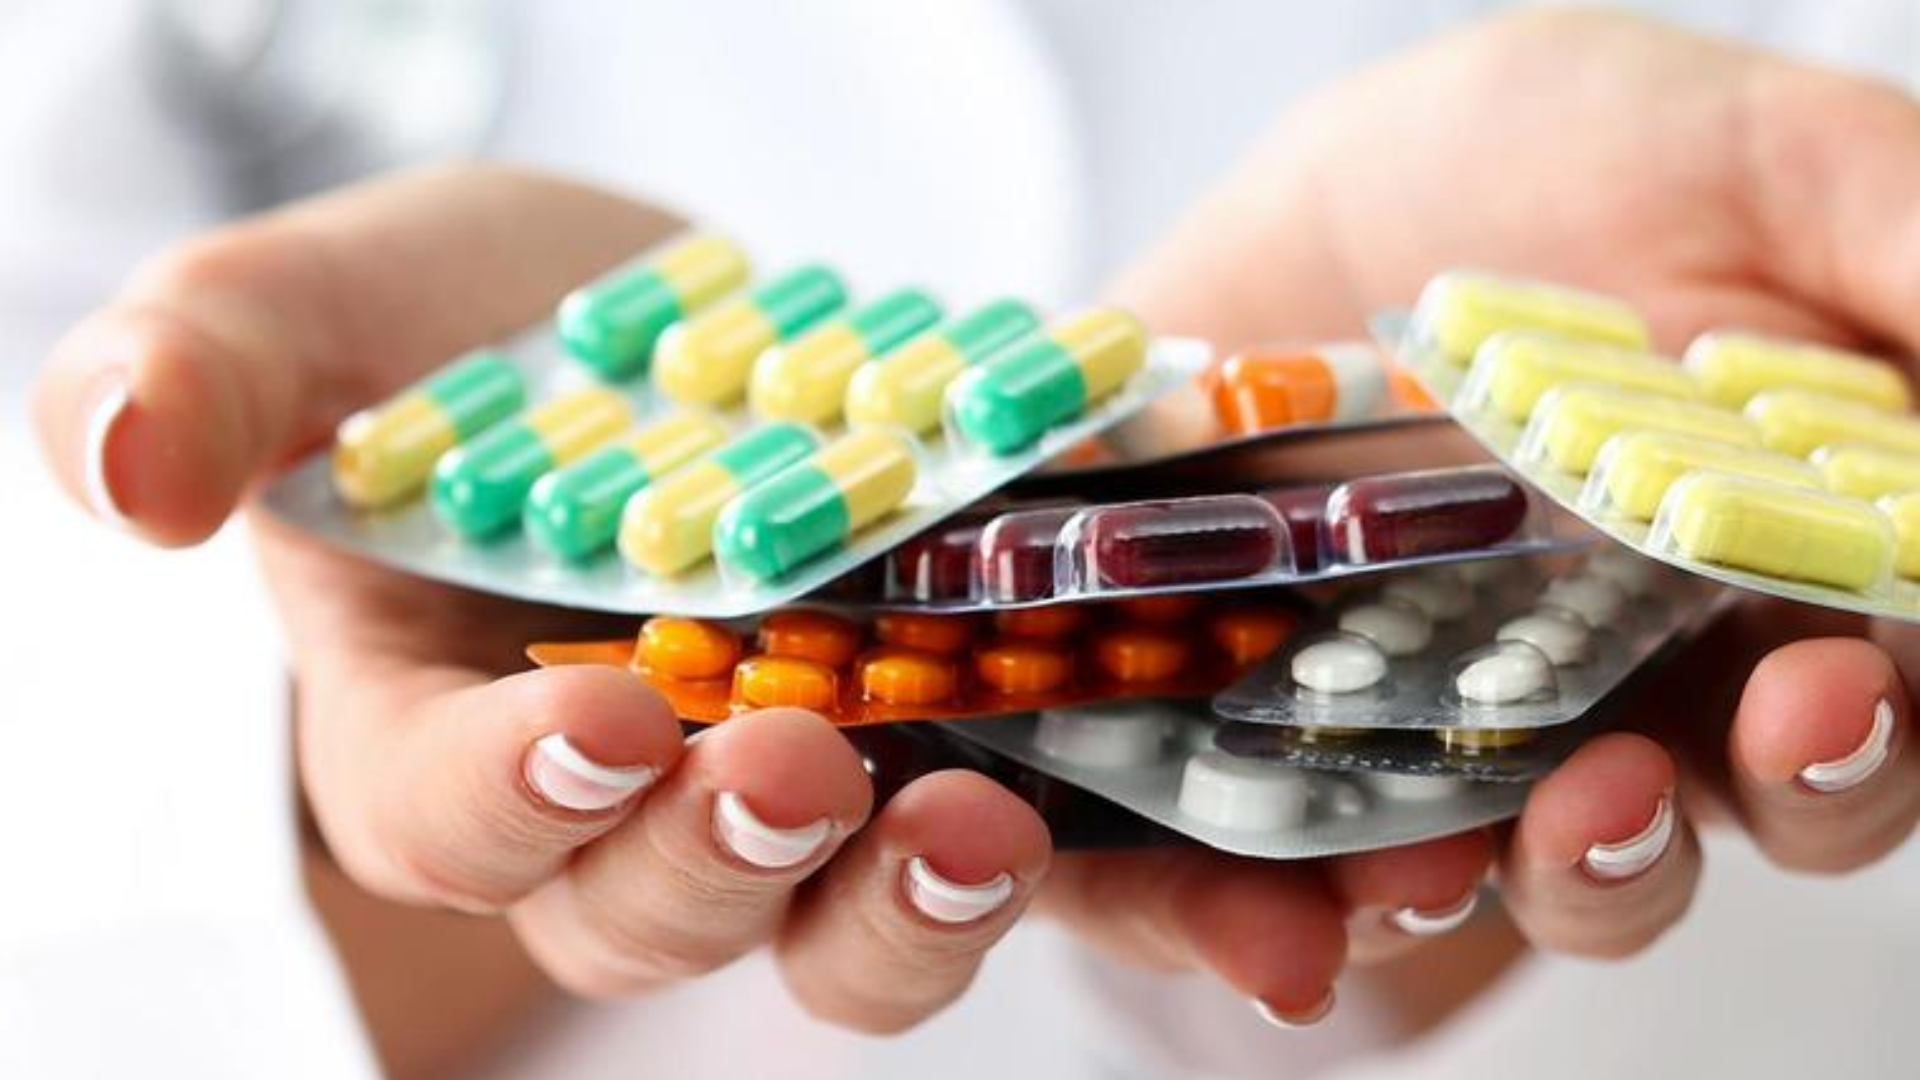 Reto de la pastilla: clonazepam y otras medicinas no deben estar al alcance de los niños para evitar accidentes mortales